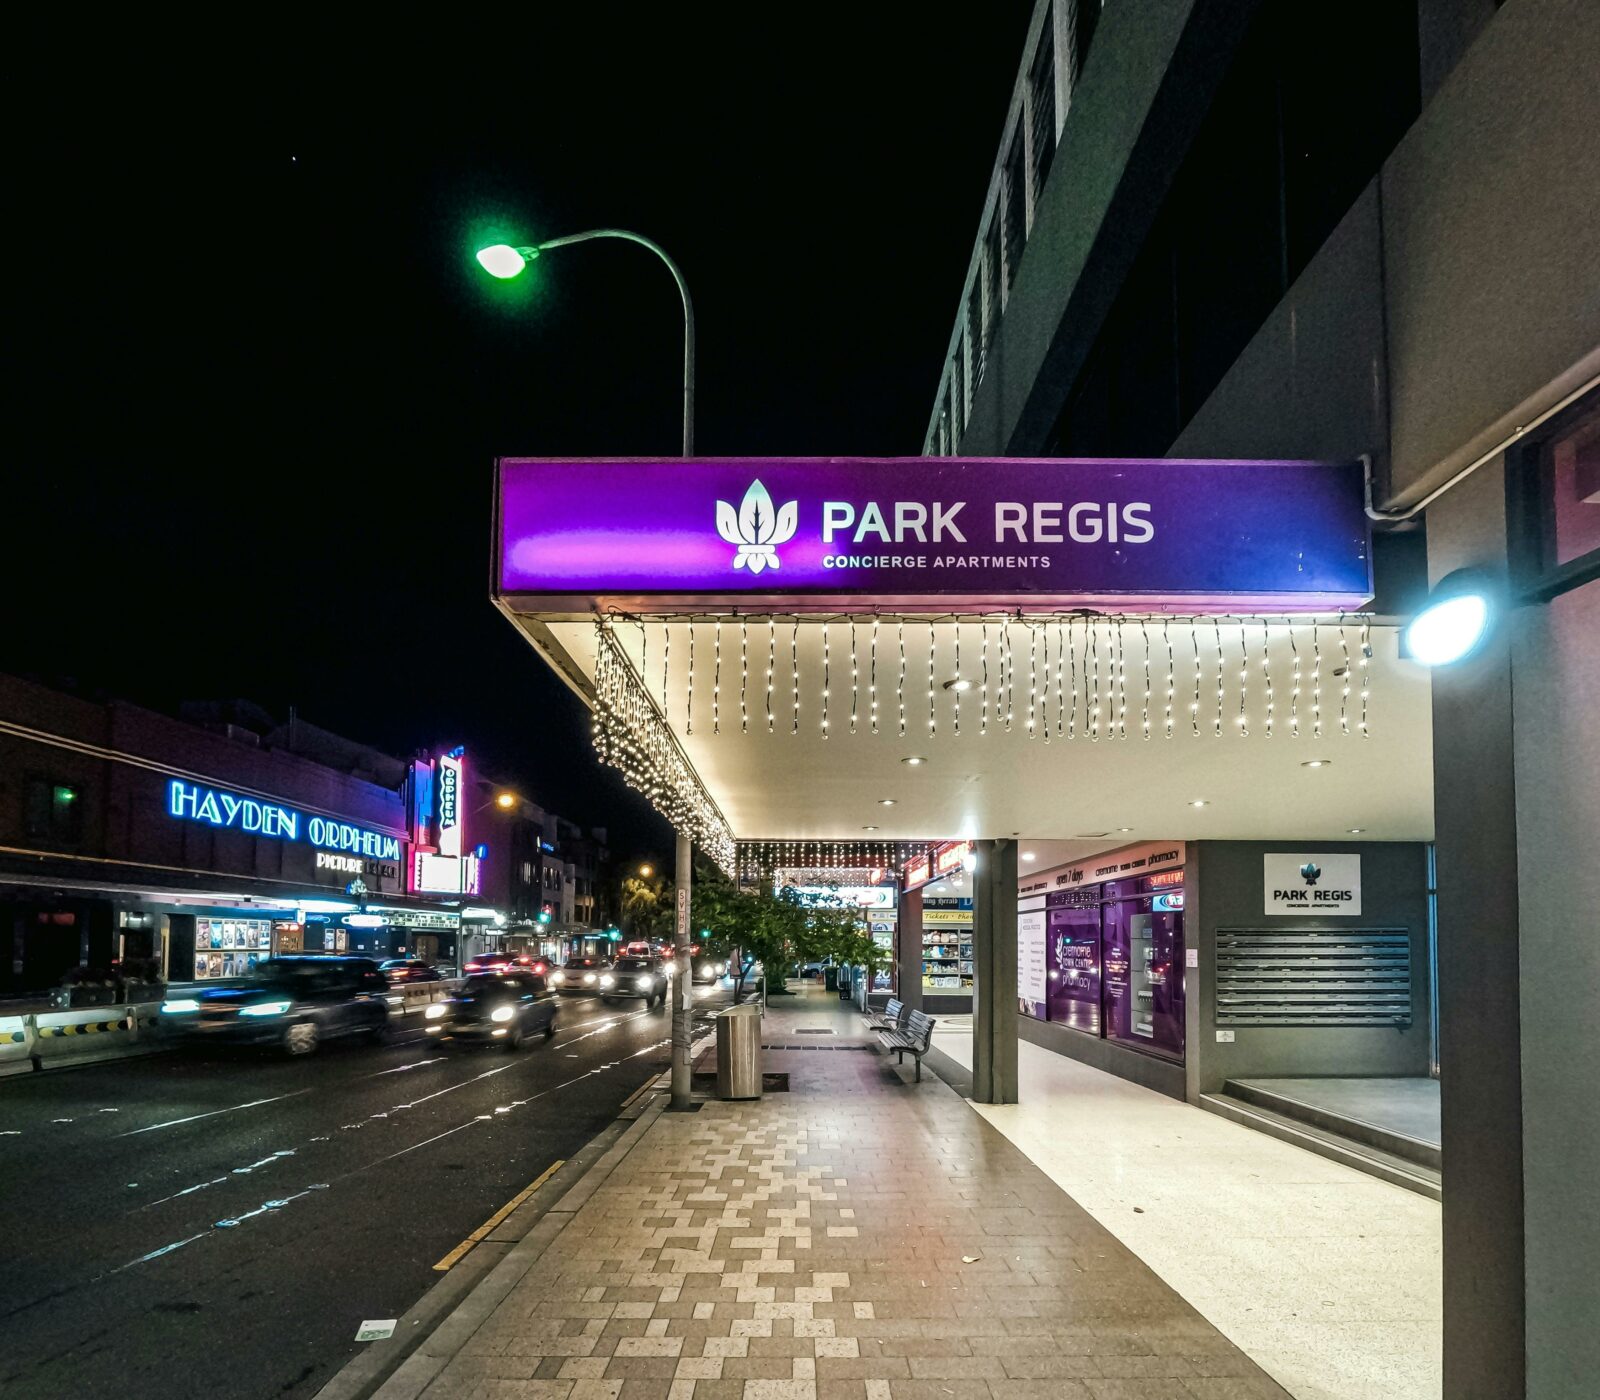 Park Regis Concierge - Entry